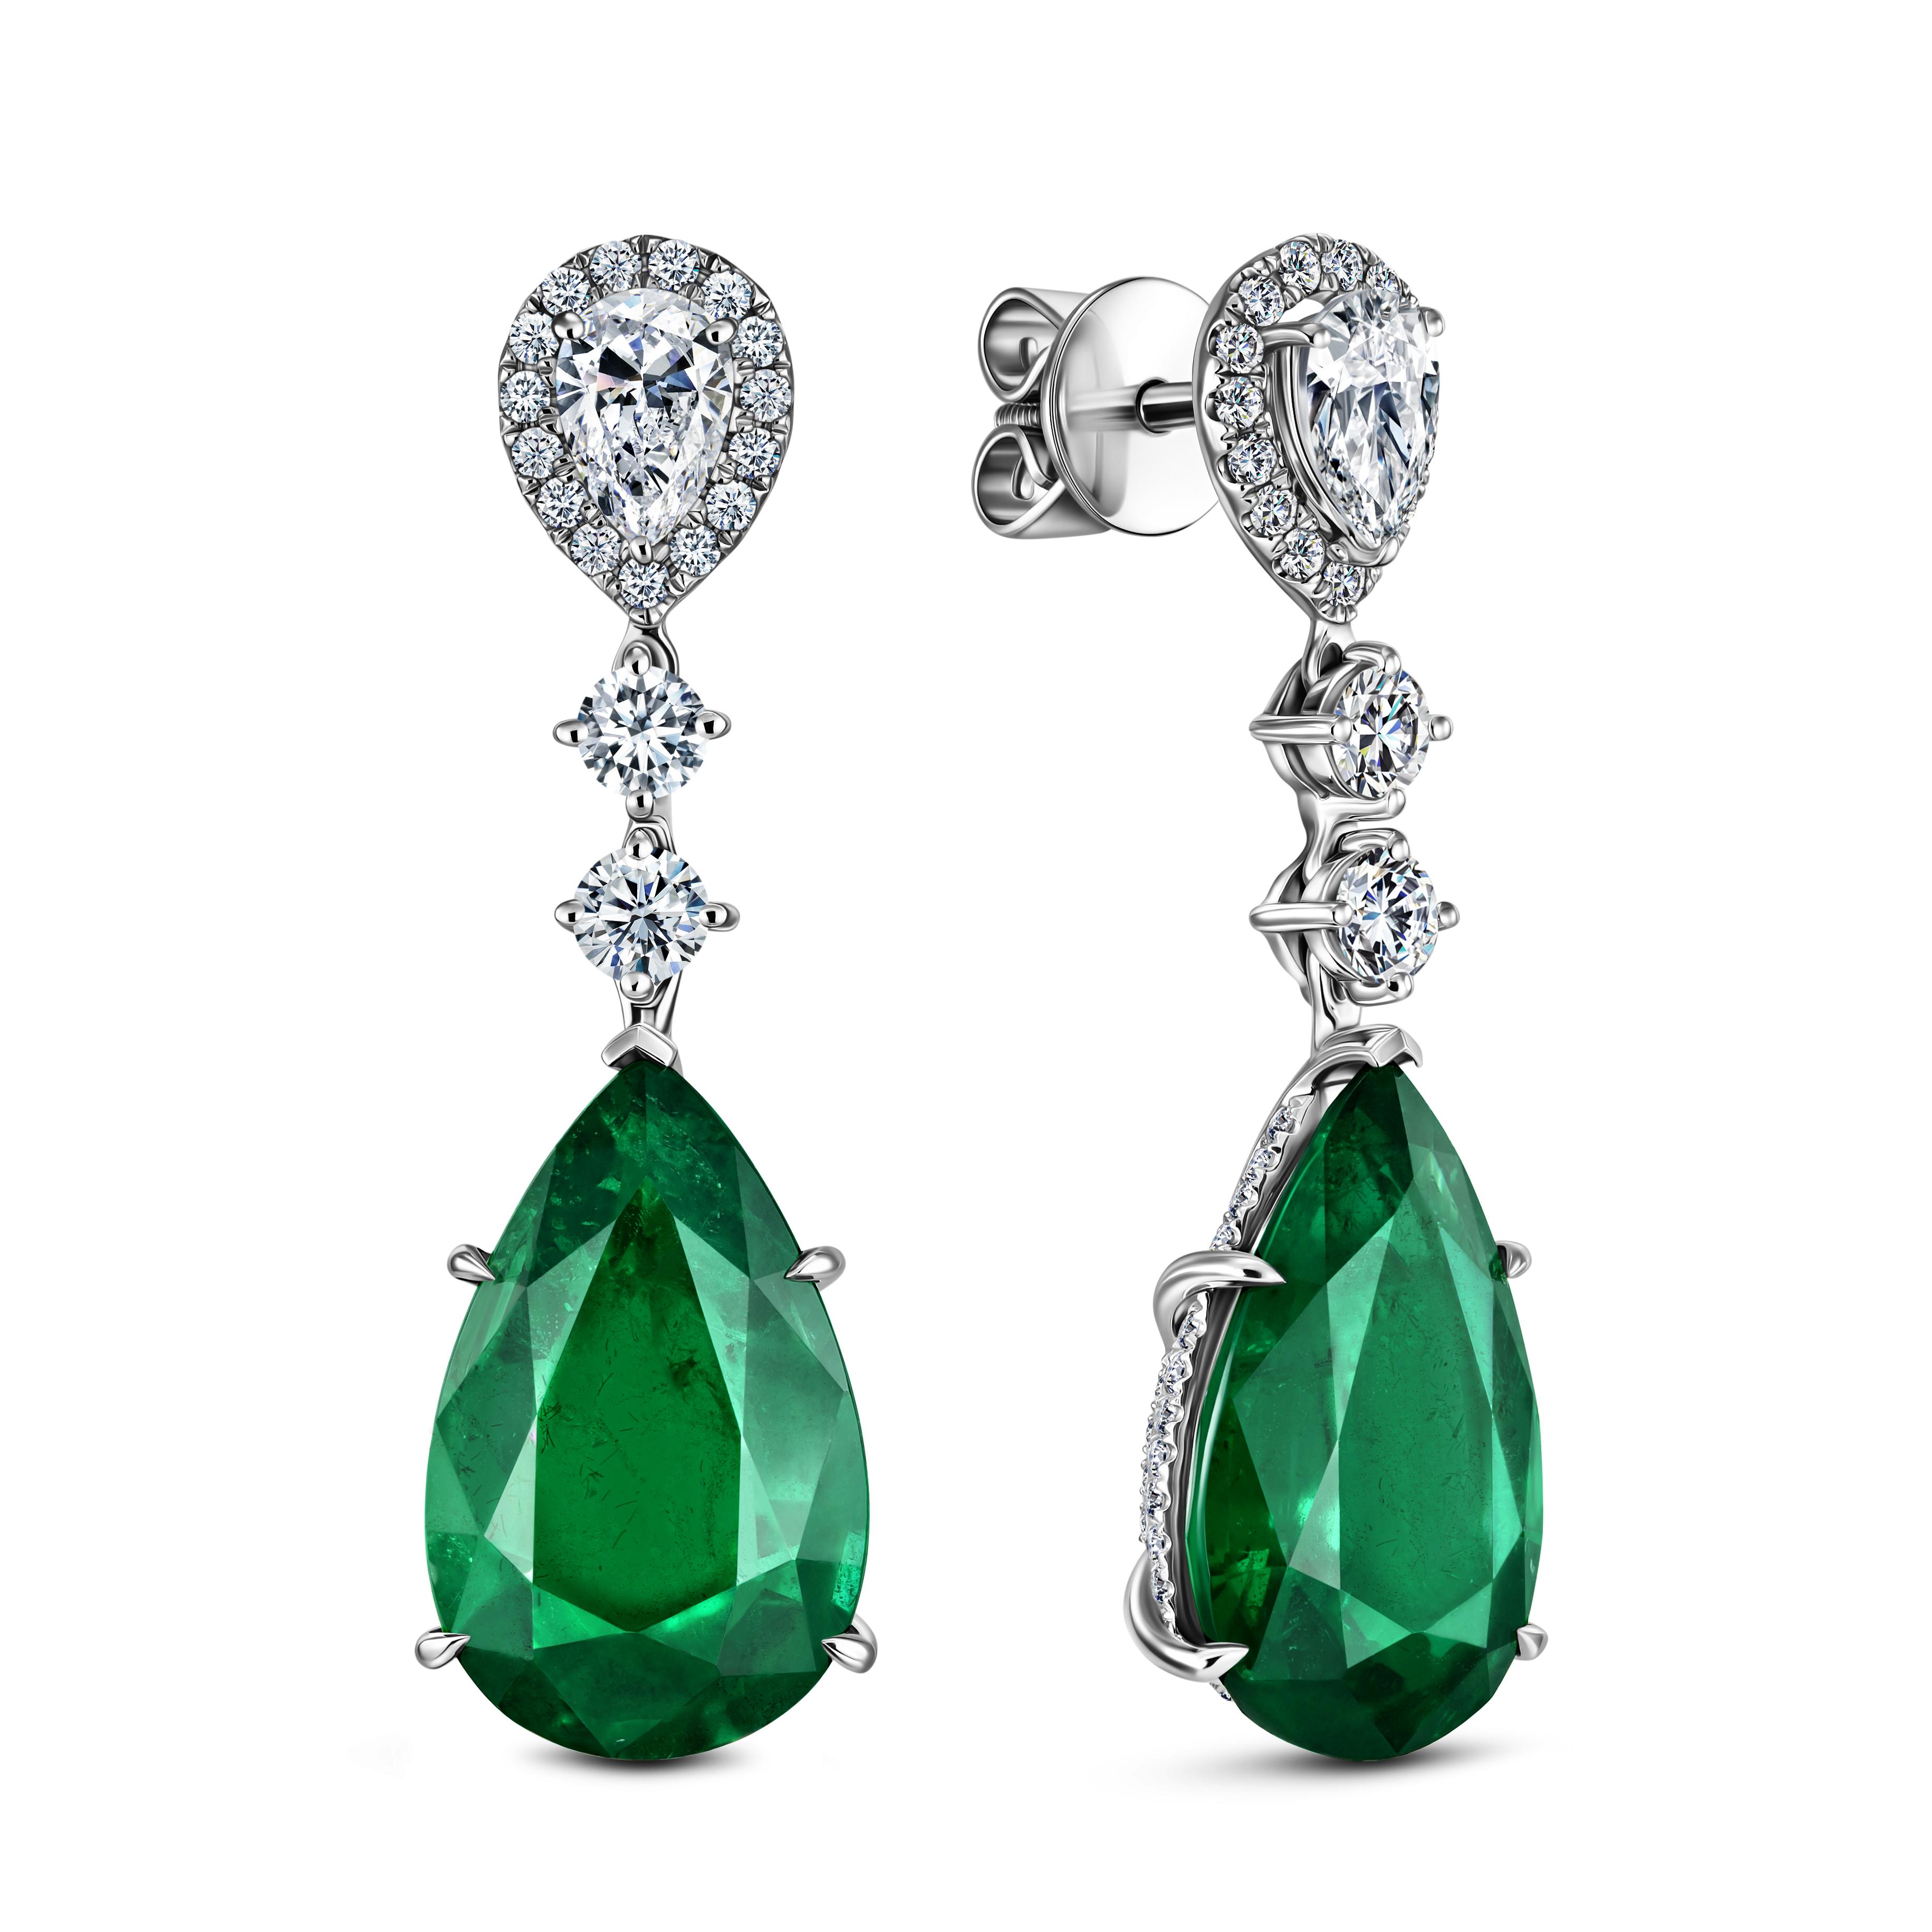 Серьги c бриллиантами и изумрудами, Royal Emerald, Miuz, от 12&nbsp;495&nbsp;000 руб. (Miuz)